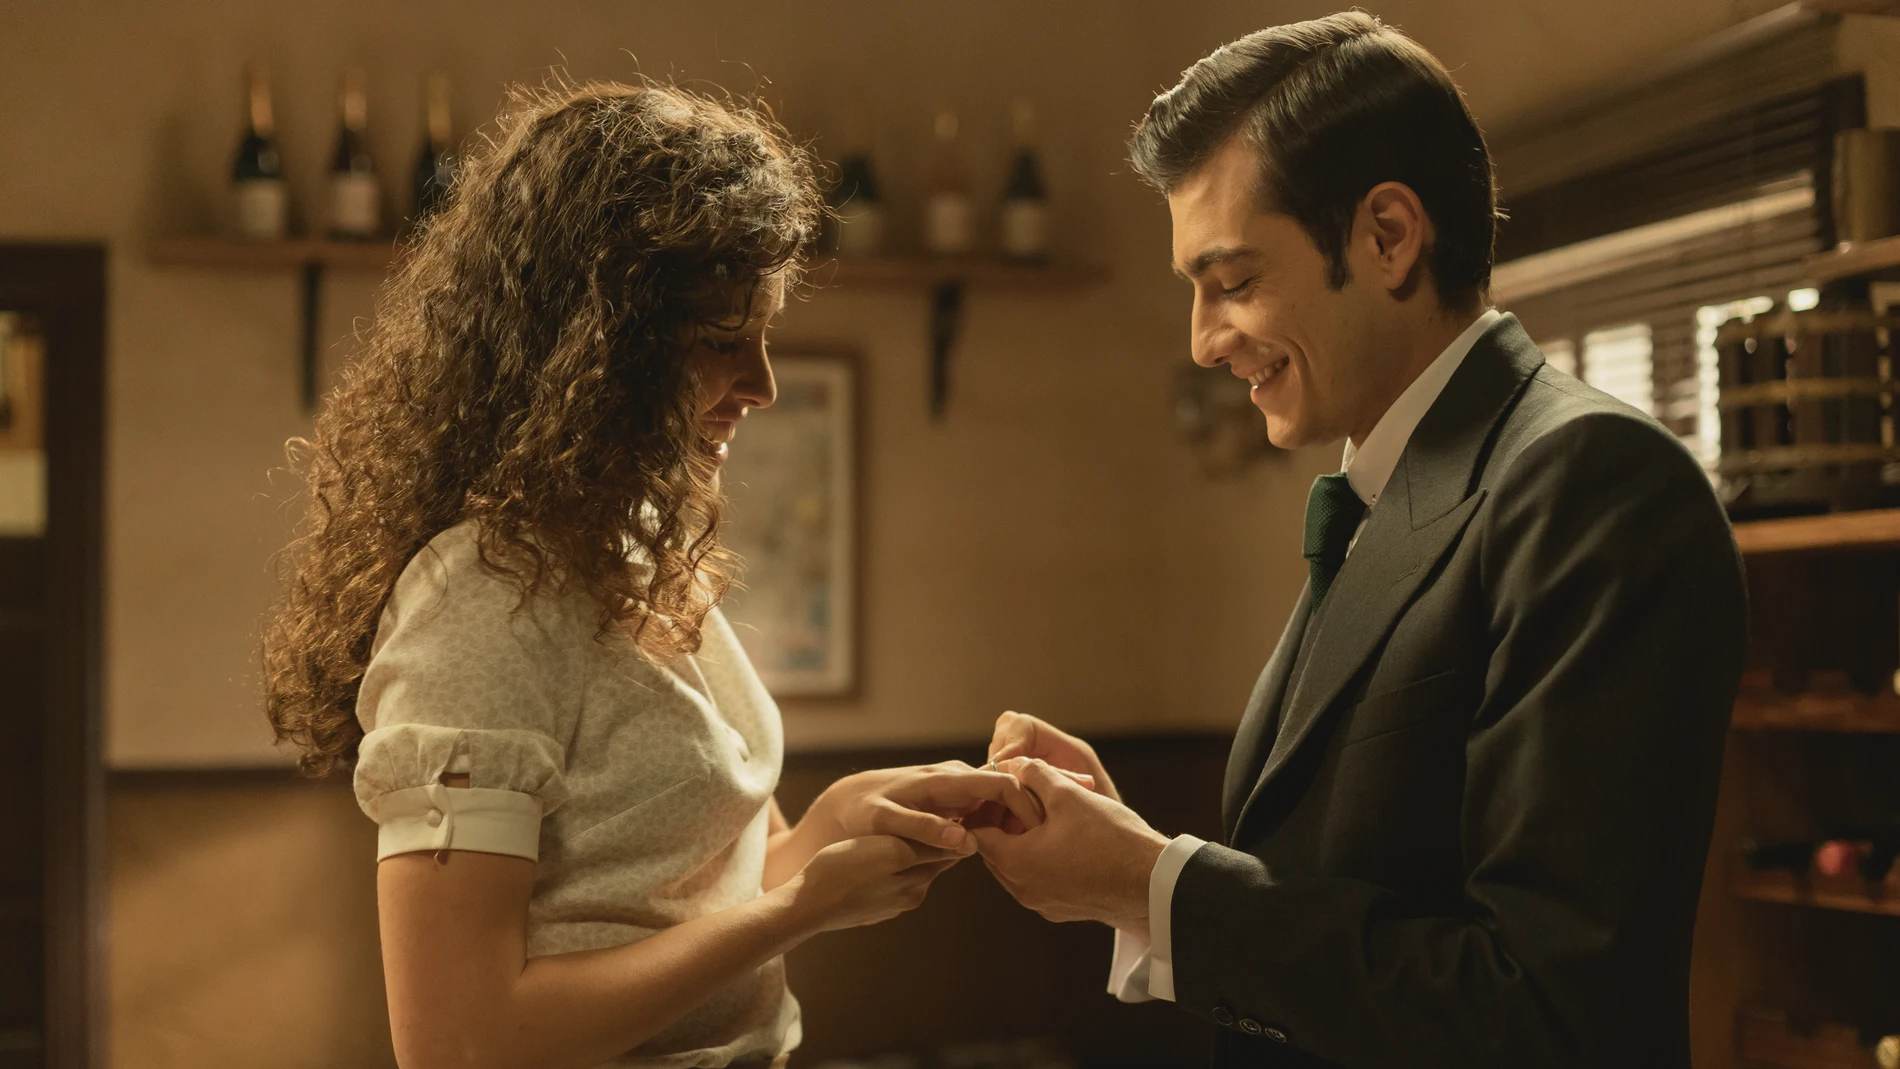 Avance semanal 'El secreto de Puente Viejo': Prudencio le pide matrimonio a Lola 